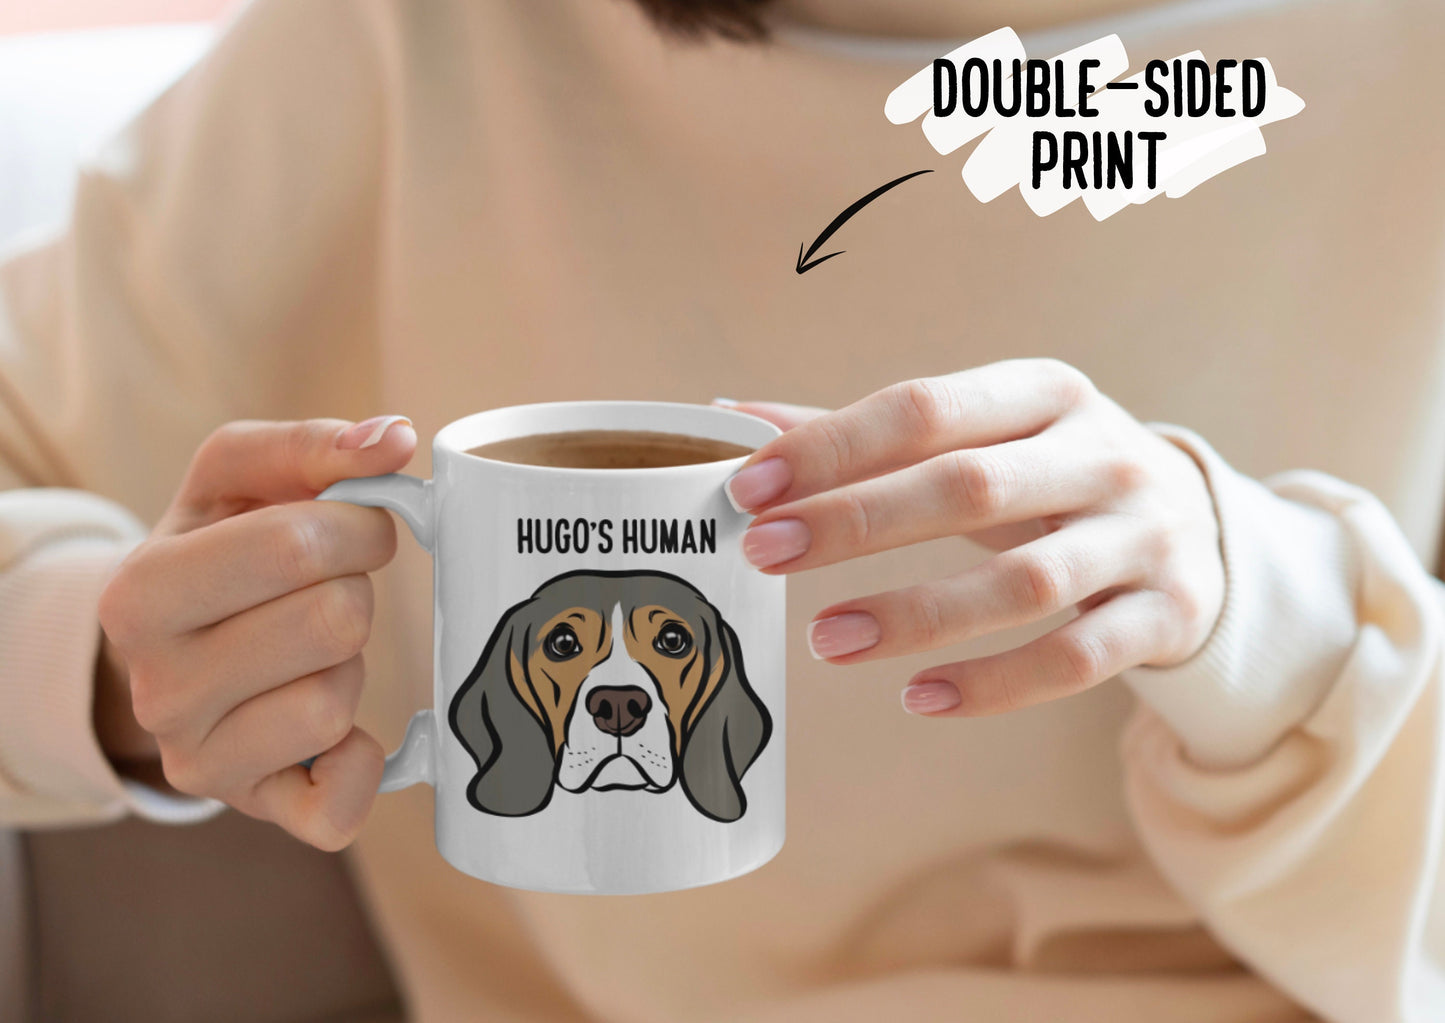 Beagle Dog Mug/ Personalised Beagle Face Coffee Mug/ Customised Pet Portrait Ceramic Mug/ Beagle Owner Christmas Mug Gift/ Dog Breed Mug